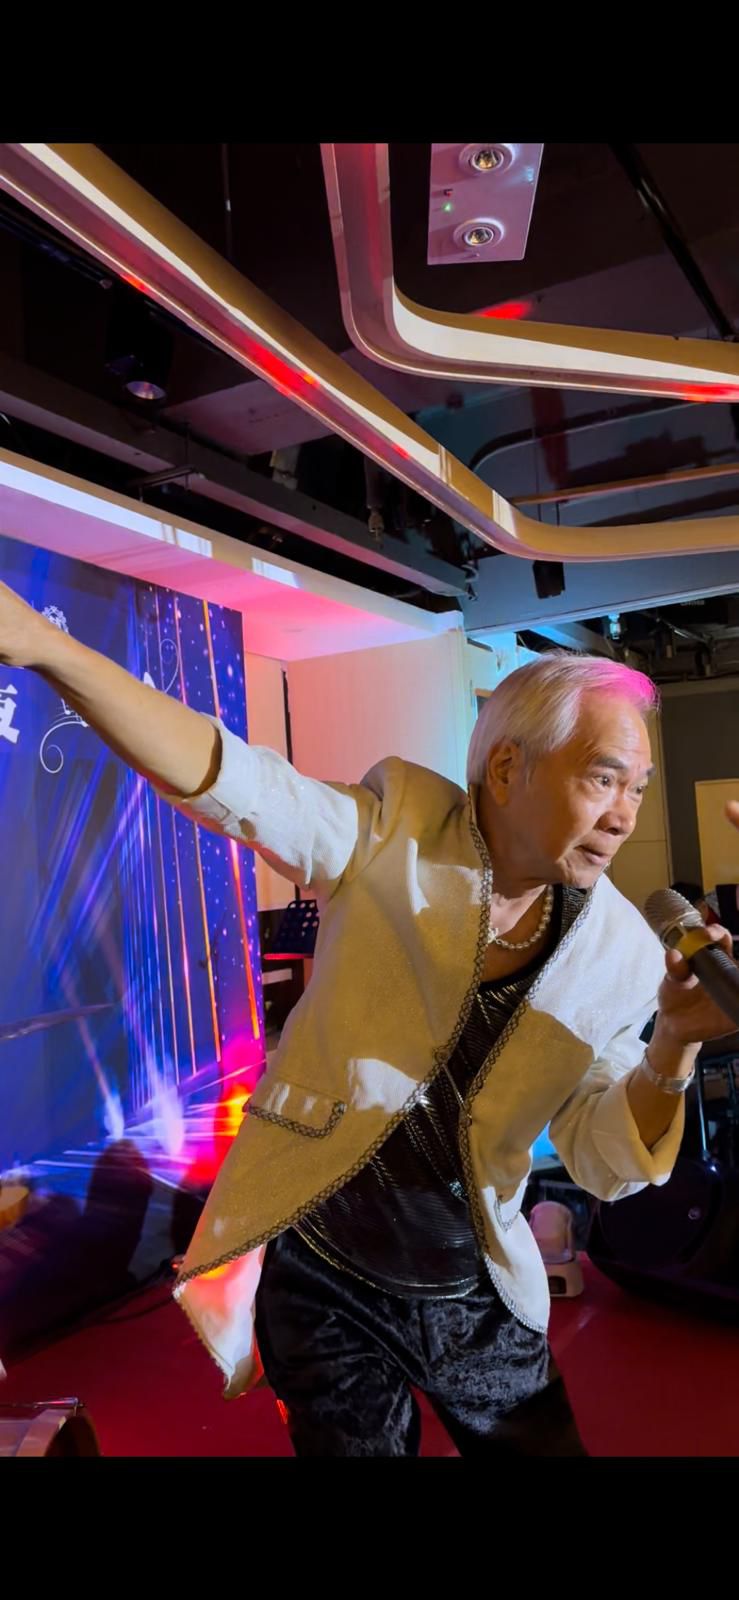 李龍基昨晚(24日)就現身香港仔某飯店舉行的《李龍基好SING之夜》。